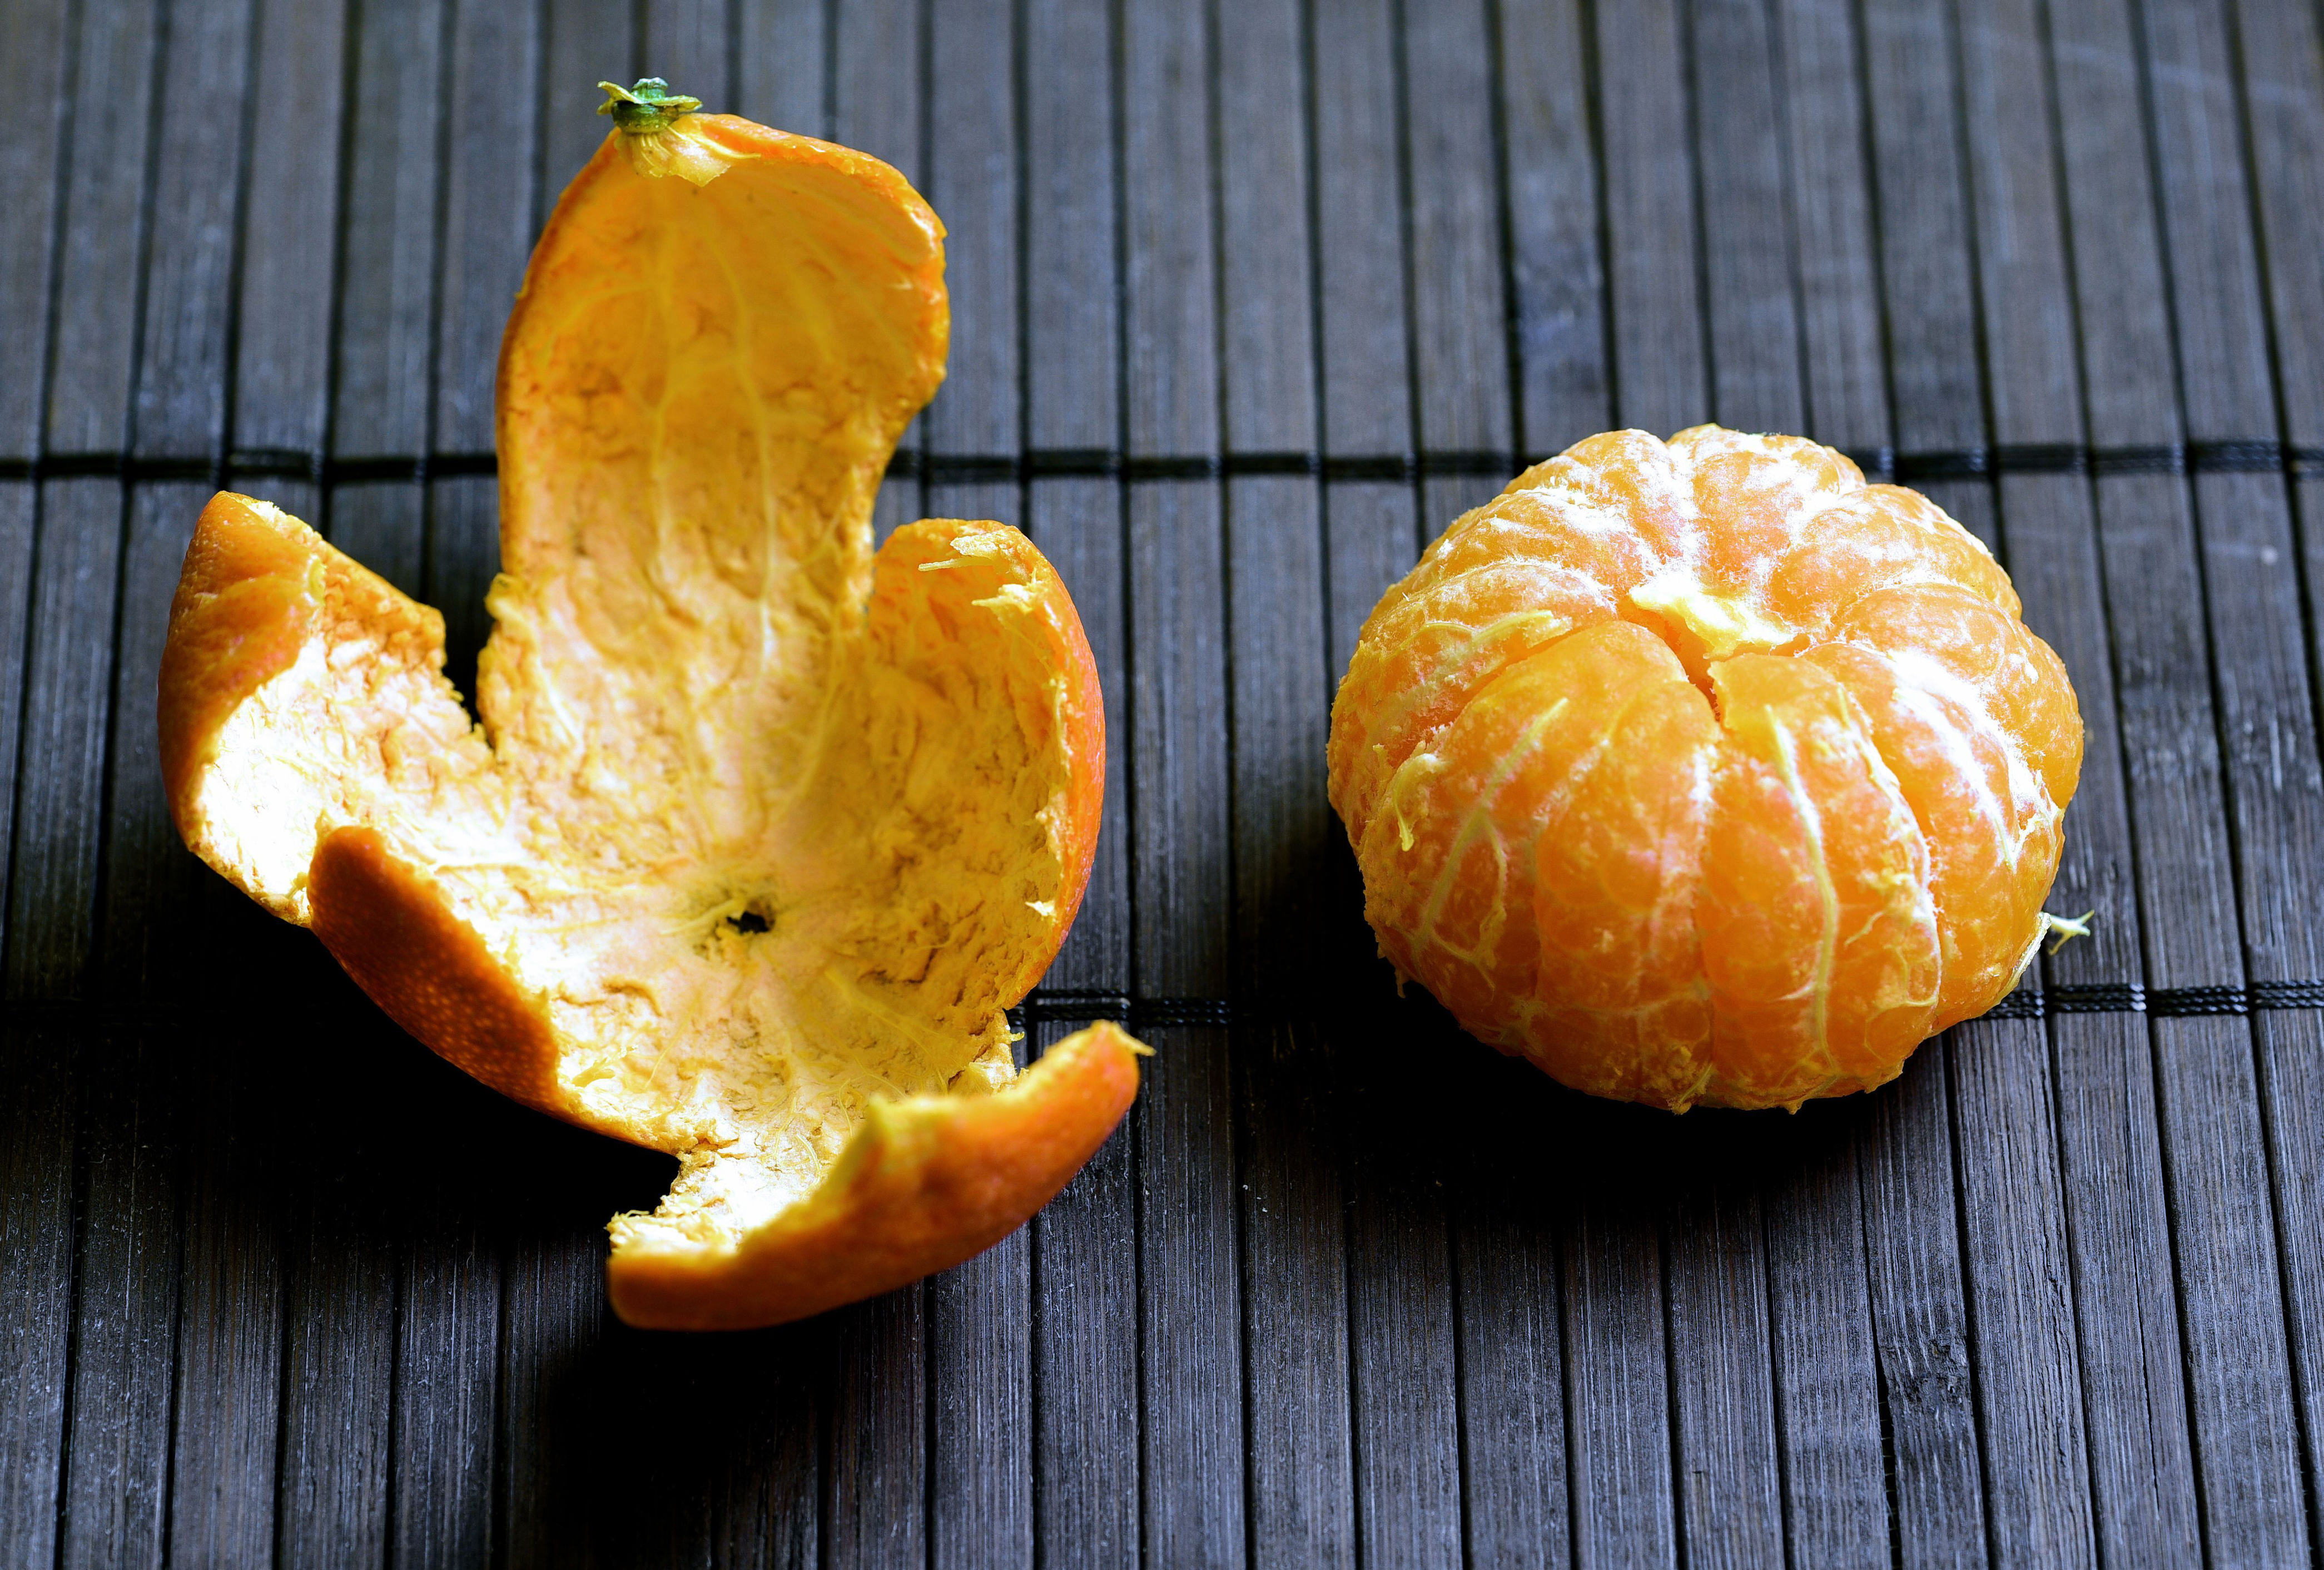 esta sería la forma correcta de consumir cáscara de mandarina para quemar calorías